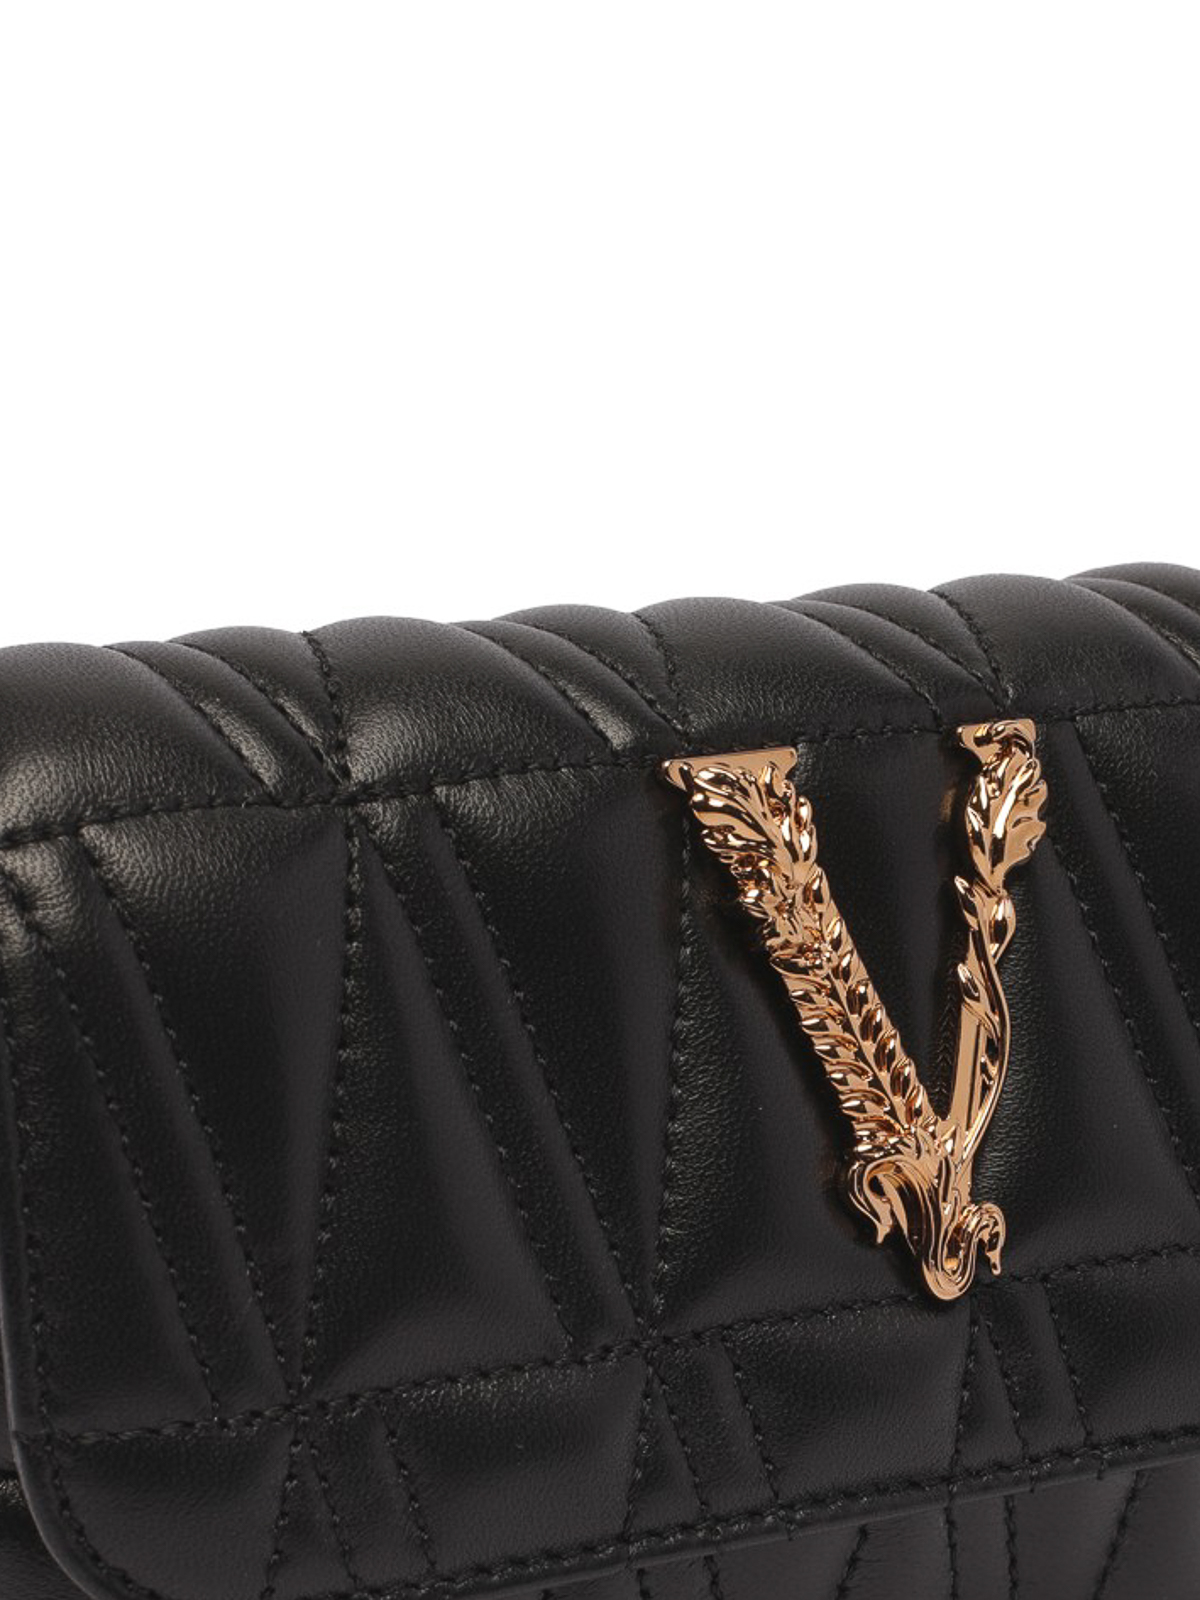 leather VIRTUS Shoulder bag wih detachable chain shoulder strap